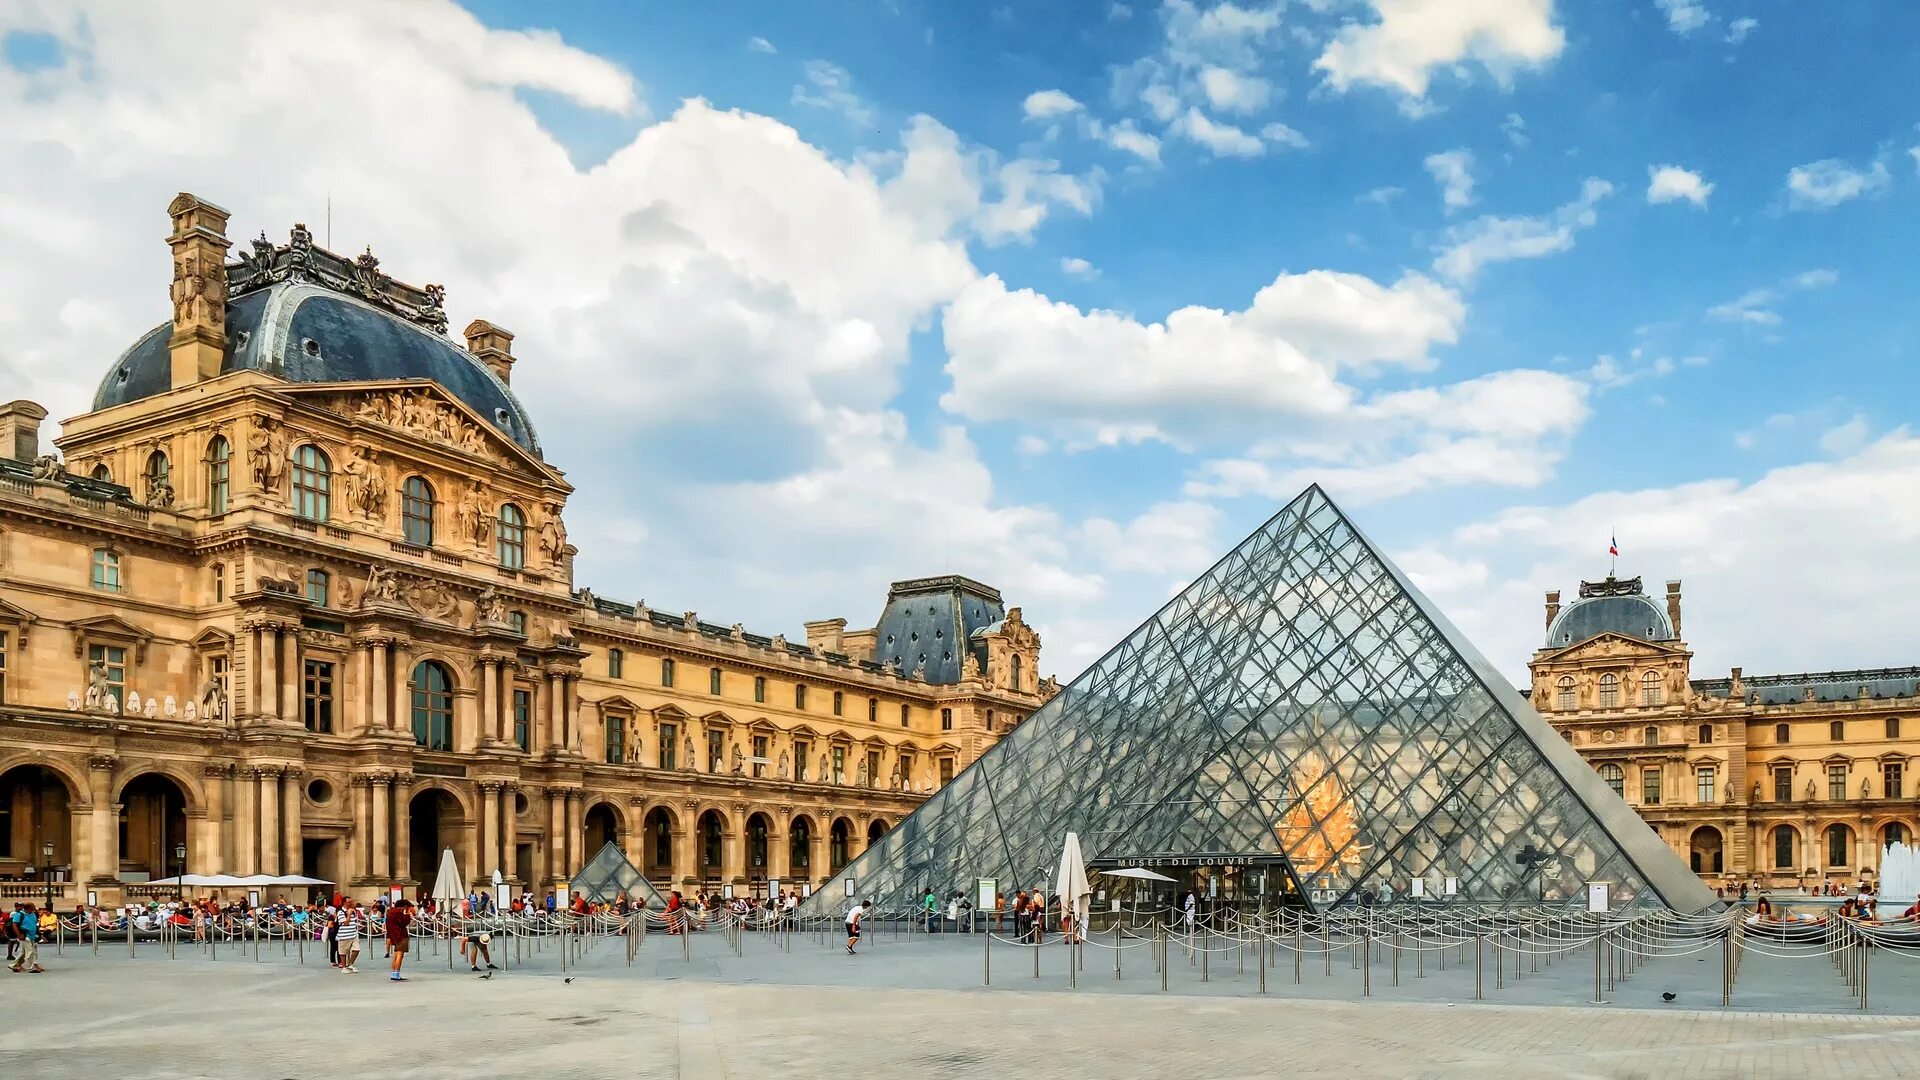 Musee louvre. Музеи. Лувр. Париж. Лувр Париж Франция. Франция дворец Лувр. Музей Louvre, Париж, Франция.